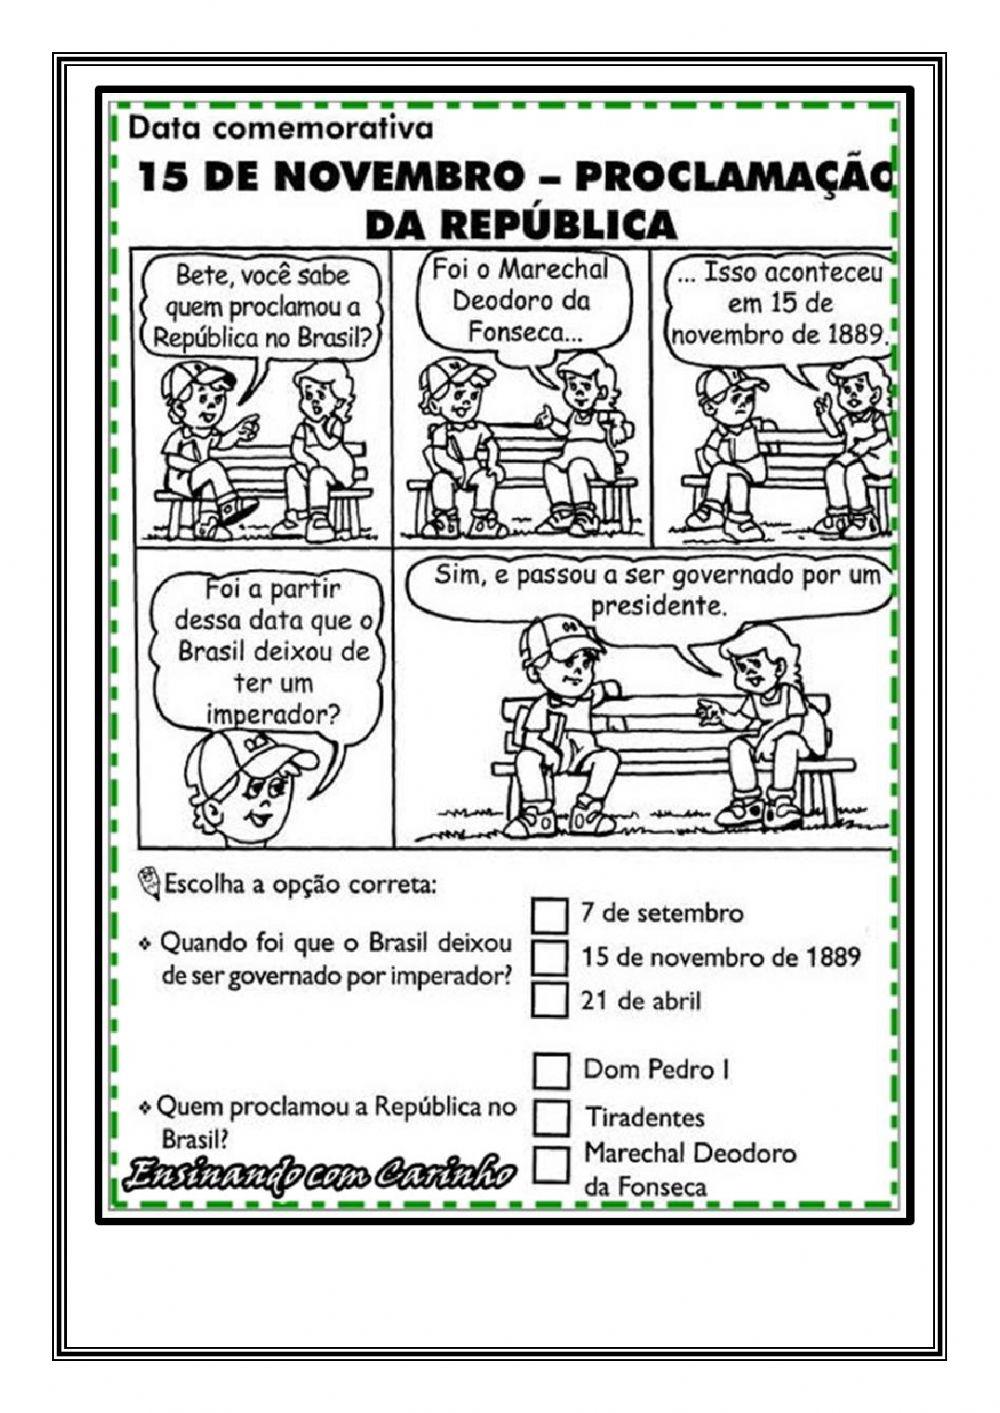 Proclamação da República do Brasil interactive worksheet